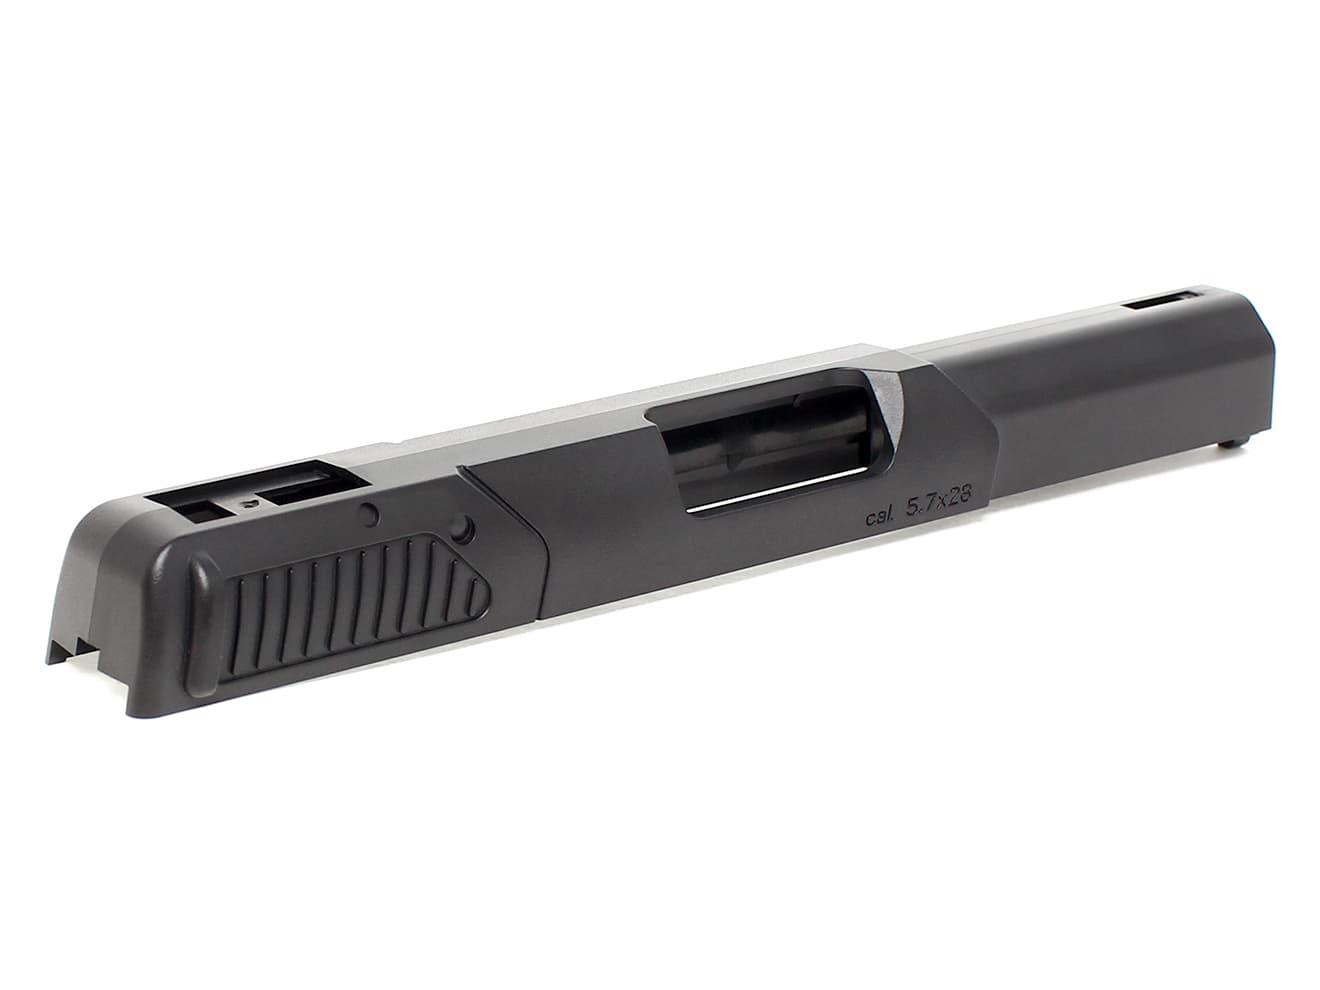 GUARDER ナイロン 強化スライド＆フレームセット FN 57 2019ver [カラー：ブラック / FDE]